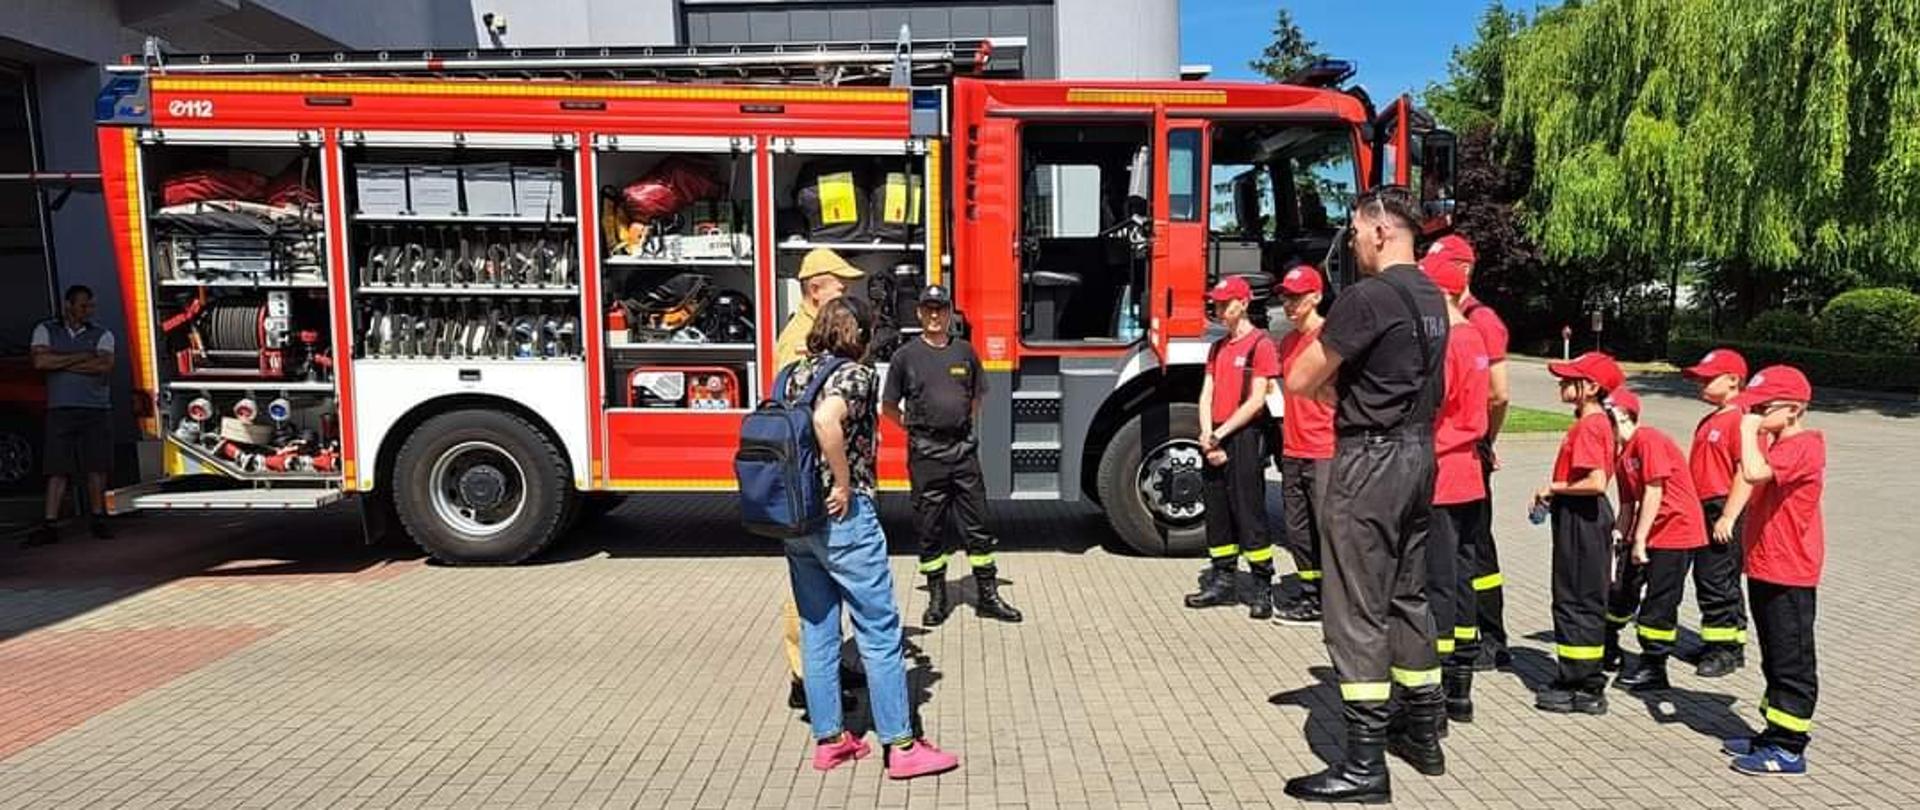 Zdjęcie przedstawia strażaka, który podczas dnia otwartych strażnic omawia dzieciom zagrożenia jakie mogą wystąpić w domach mieszkalnych oraz opowiada o pracy strażaka.